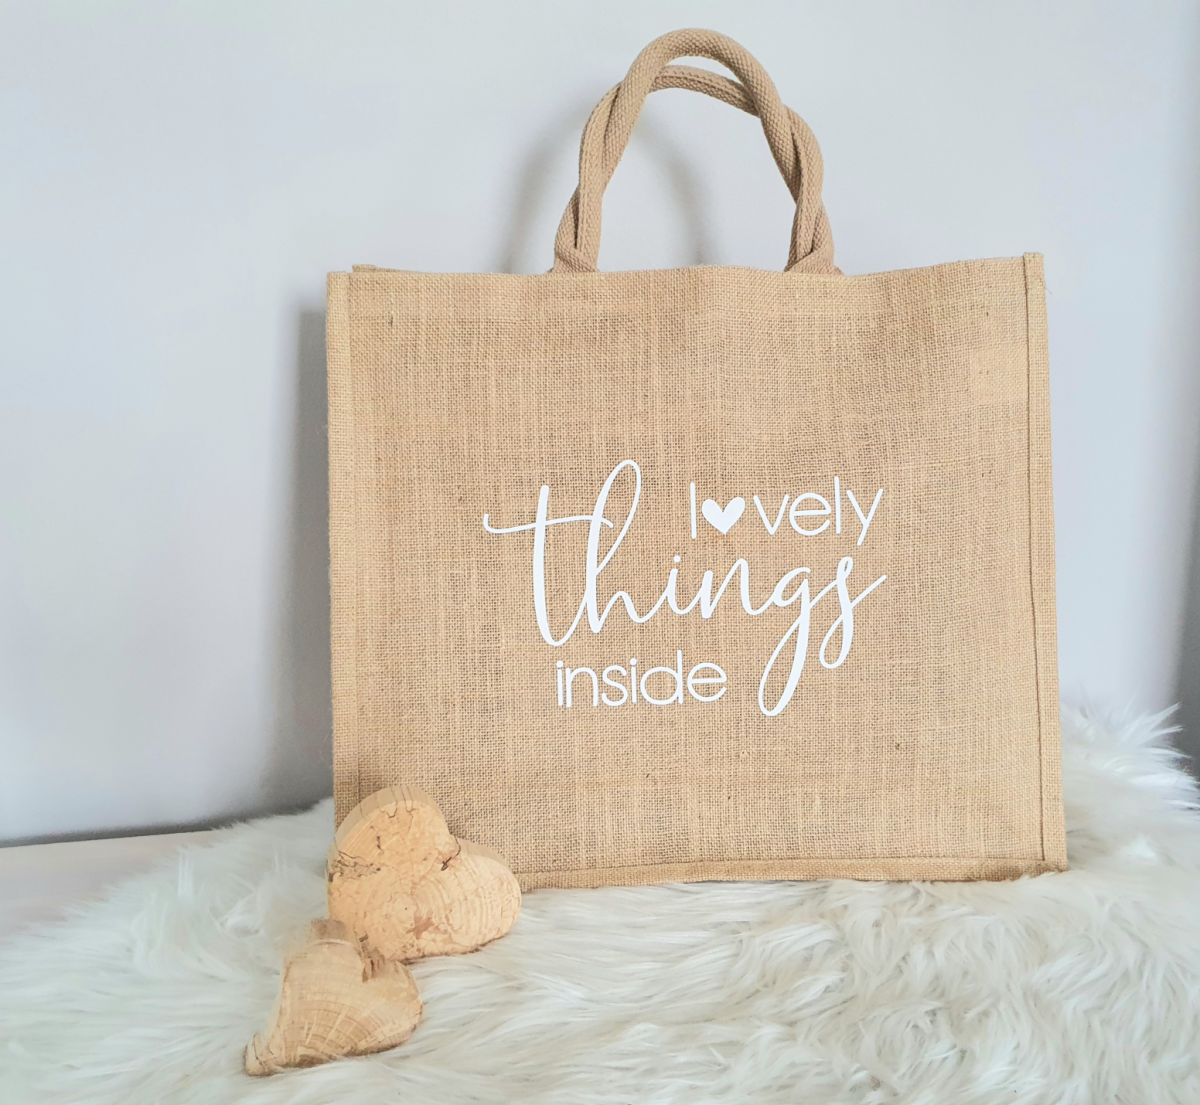 Jutetasche | Strandtasche lovely things inside | Jute Shopper / XXL Tasche